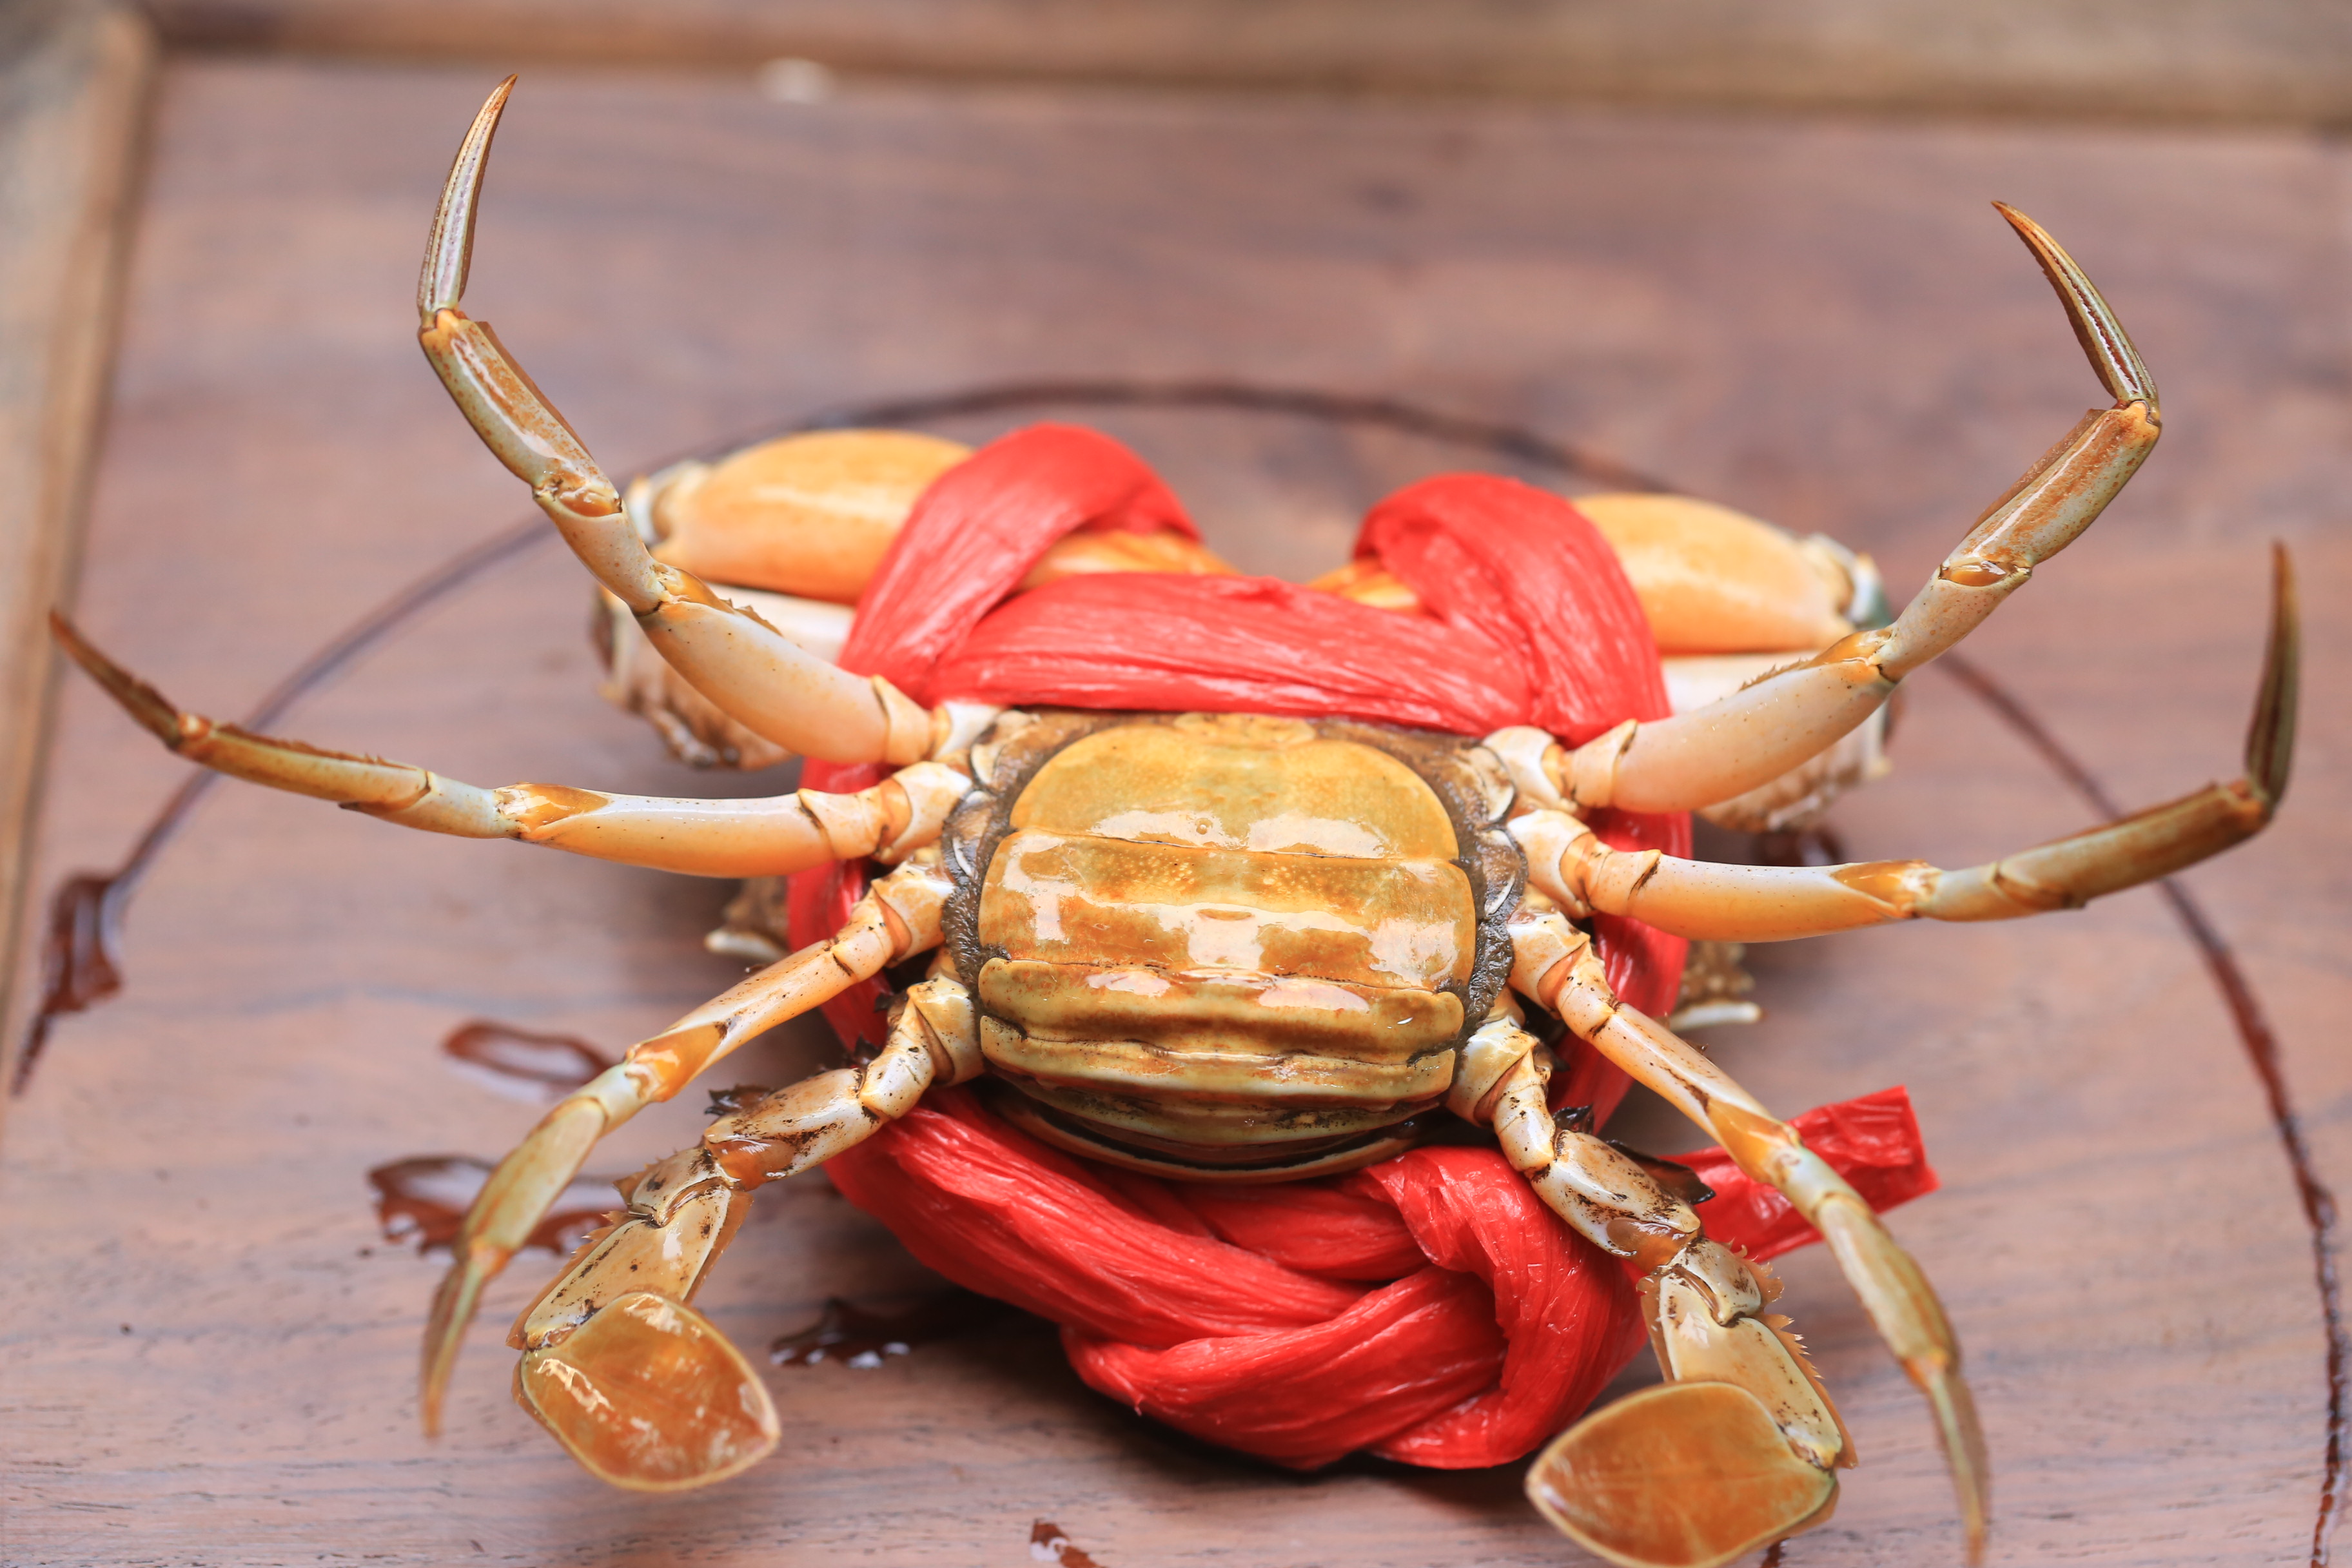 为了不破坏螃蟹本身的营养,又能保持最足的鲜美,进食前先用冰把鲜活的